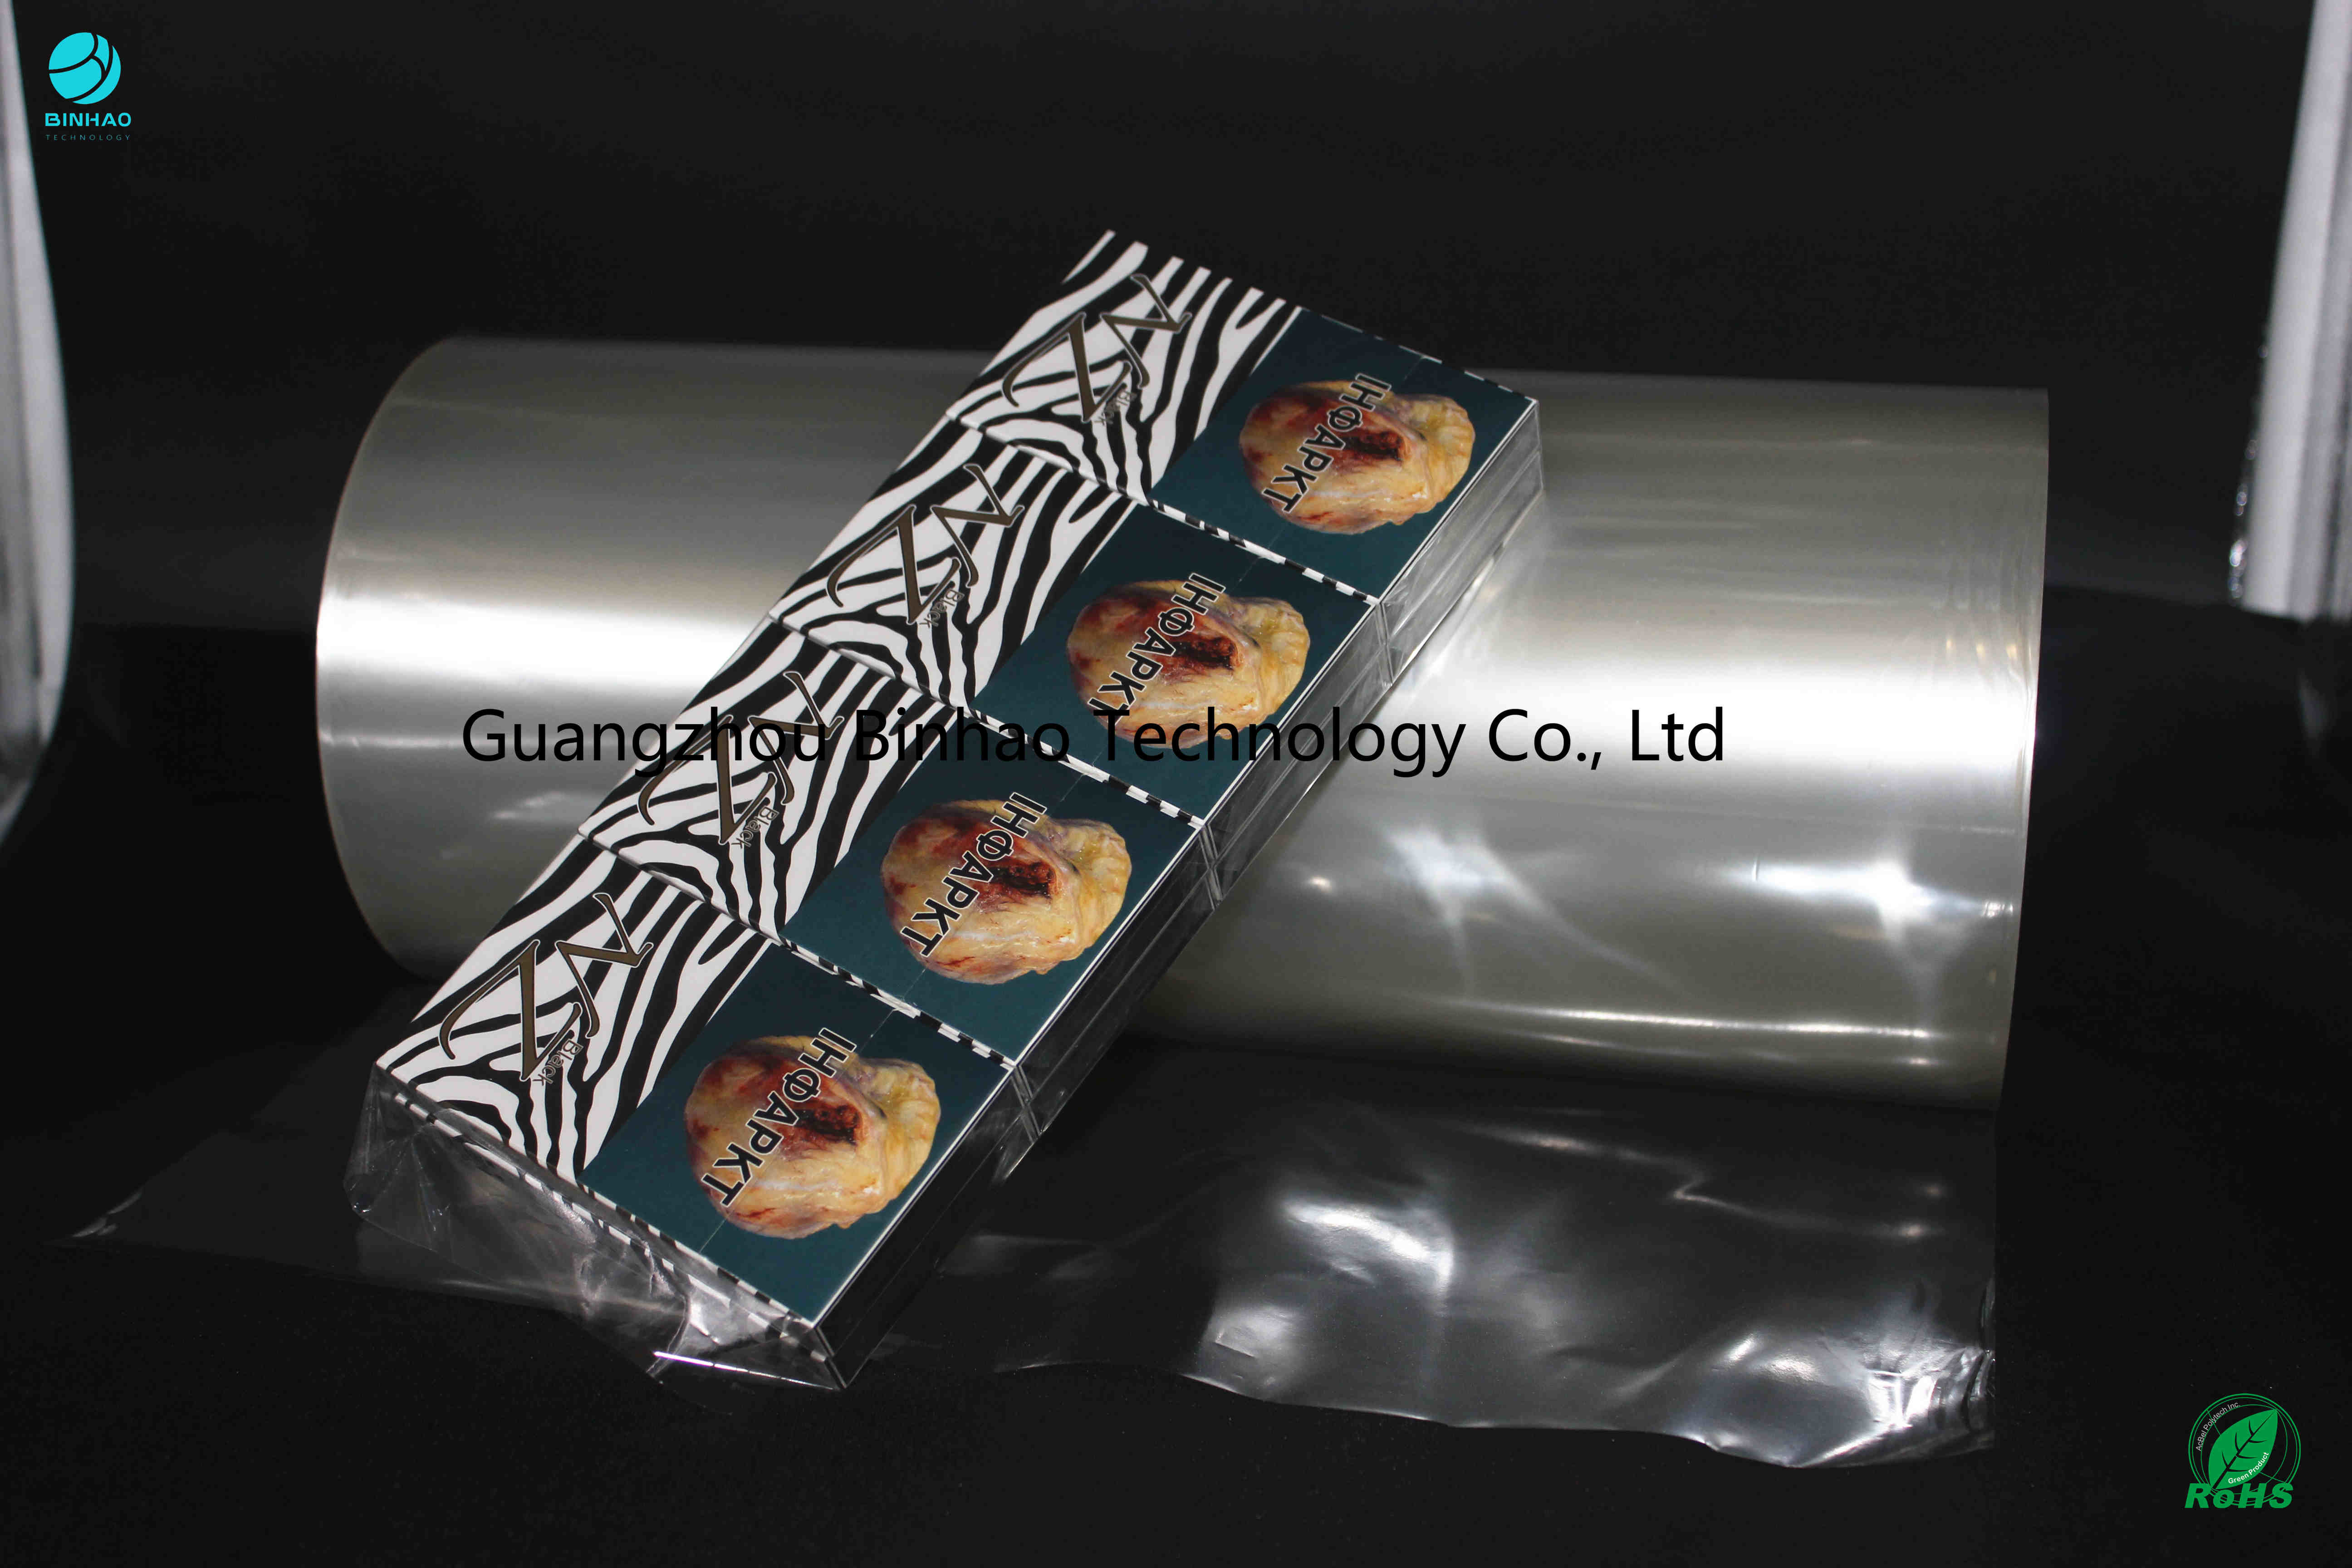 فیلم بسته بندی PVC جذابیت تصویری با وضوح بالا برای نرخ انقباض سیگار 5٪